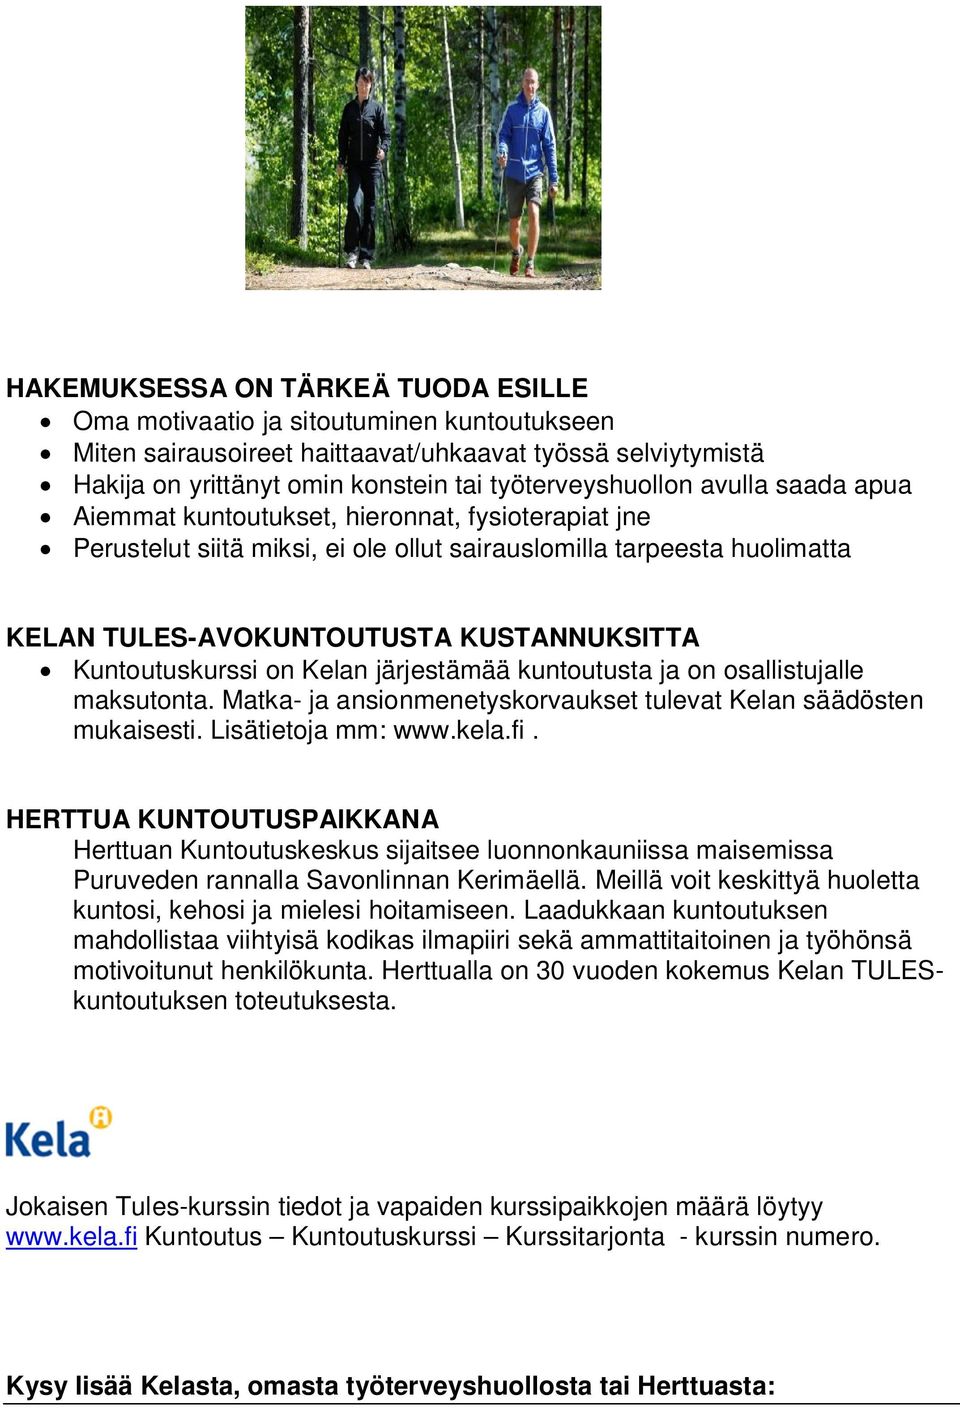 on Kelan järjestämää kuntoutusta ja on osallistujalle maksutonta. Matka- ja ansionmenetyskorvaukset tulevat Kelan säädösten mukaisesti. Lisätietoja mm: www.kela.fi.